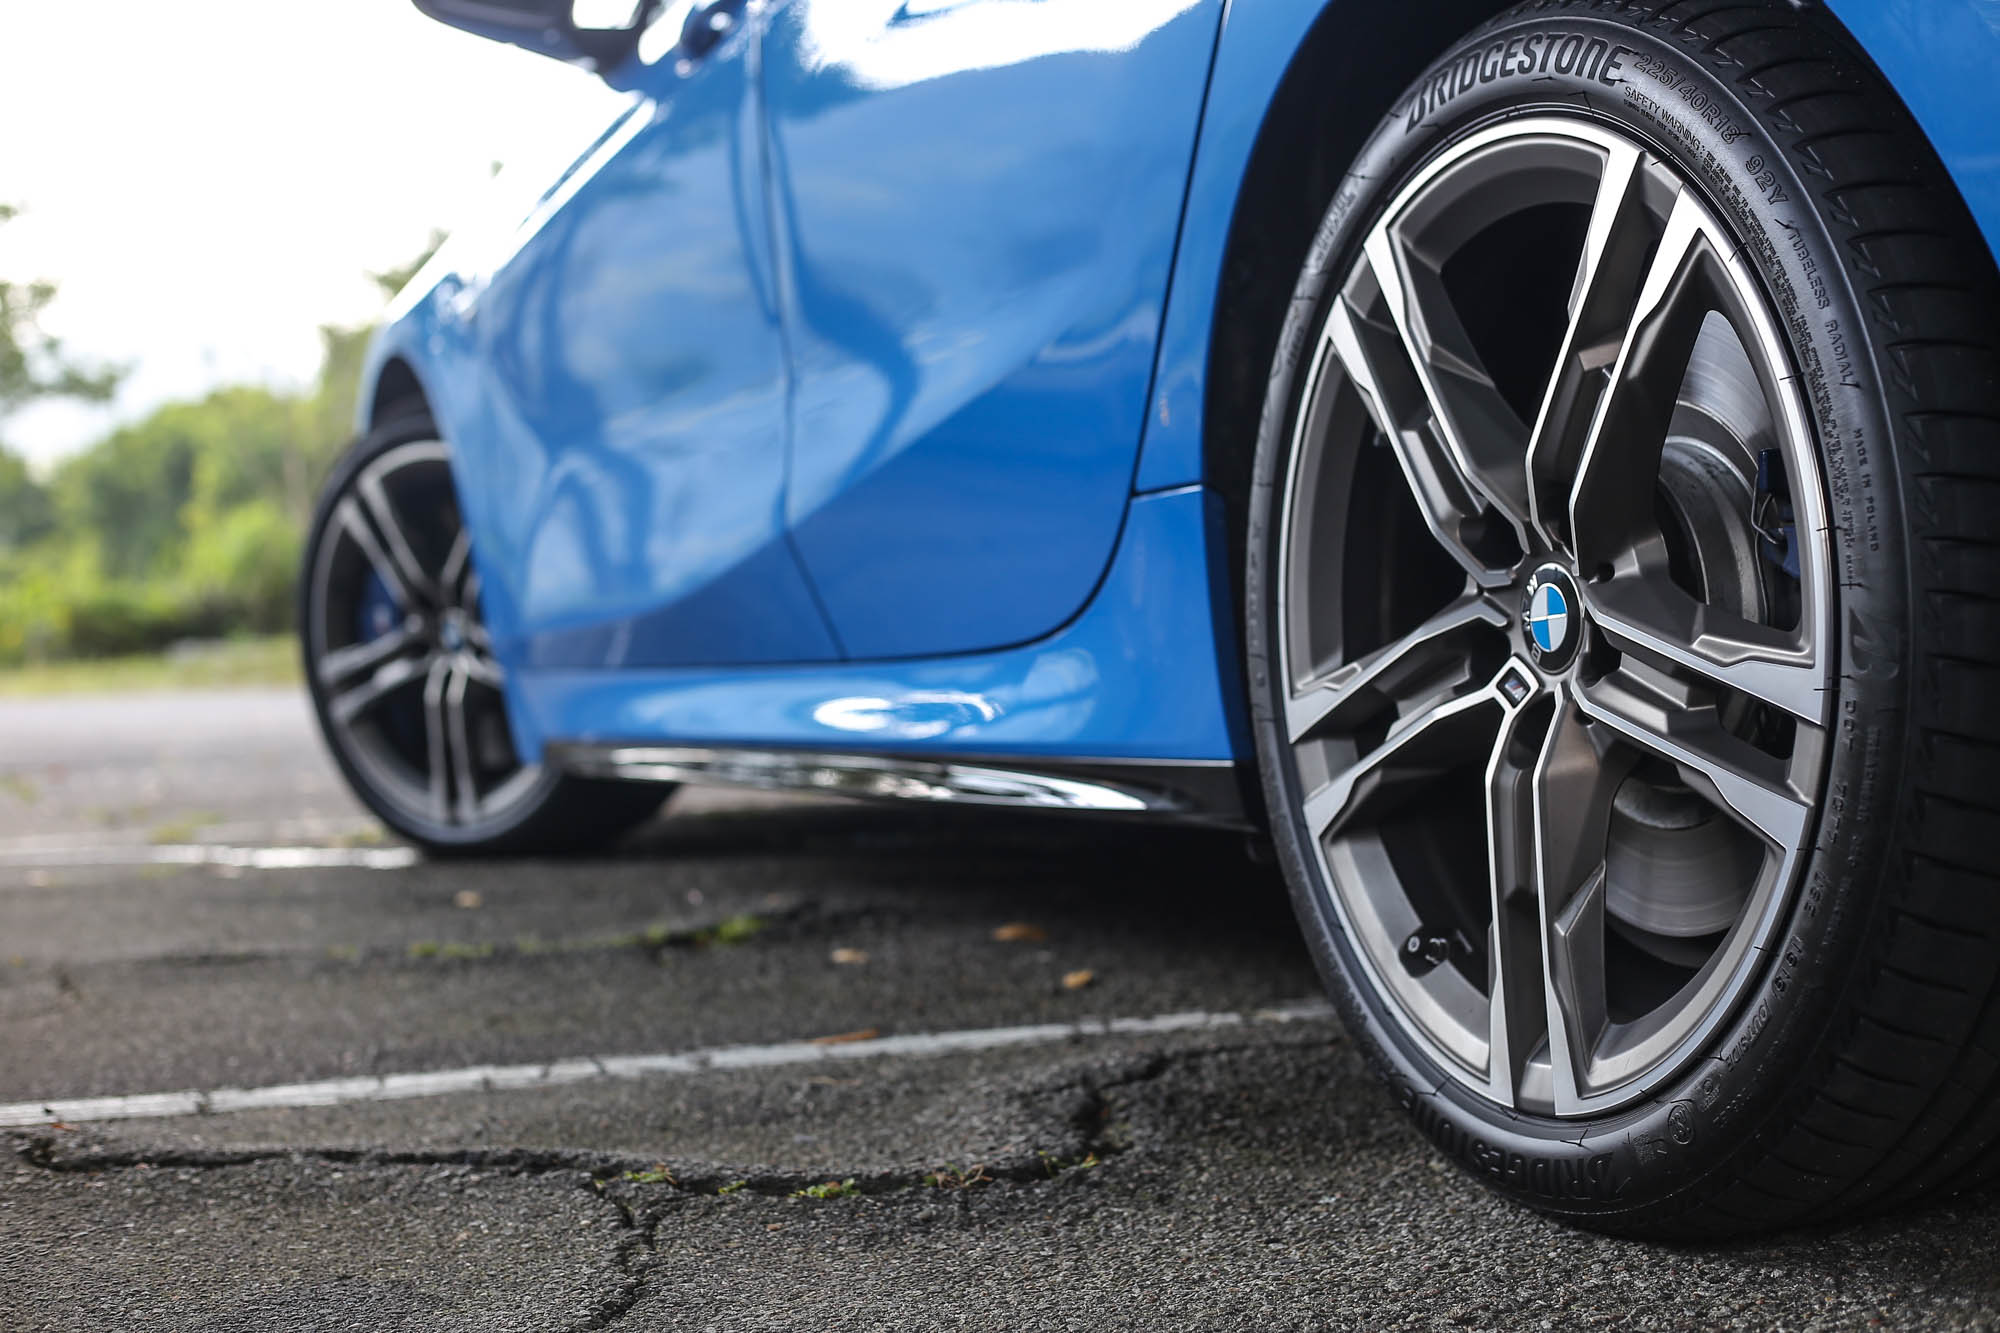 18 吋 M 款輪圈是標準配備，Bridgestone T005 車胎尚待加強。